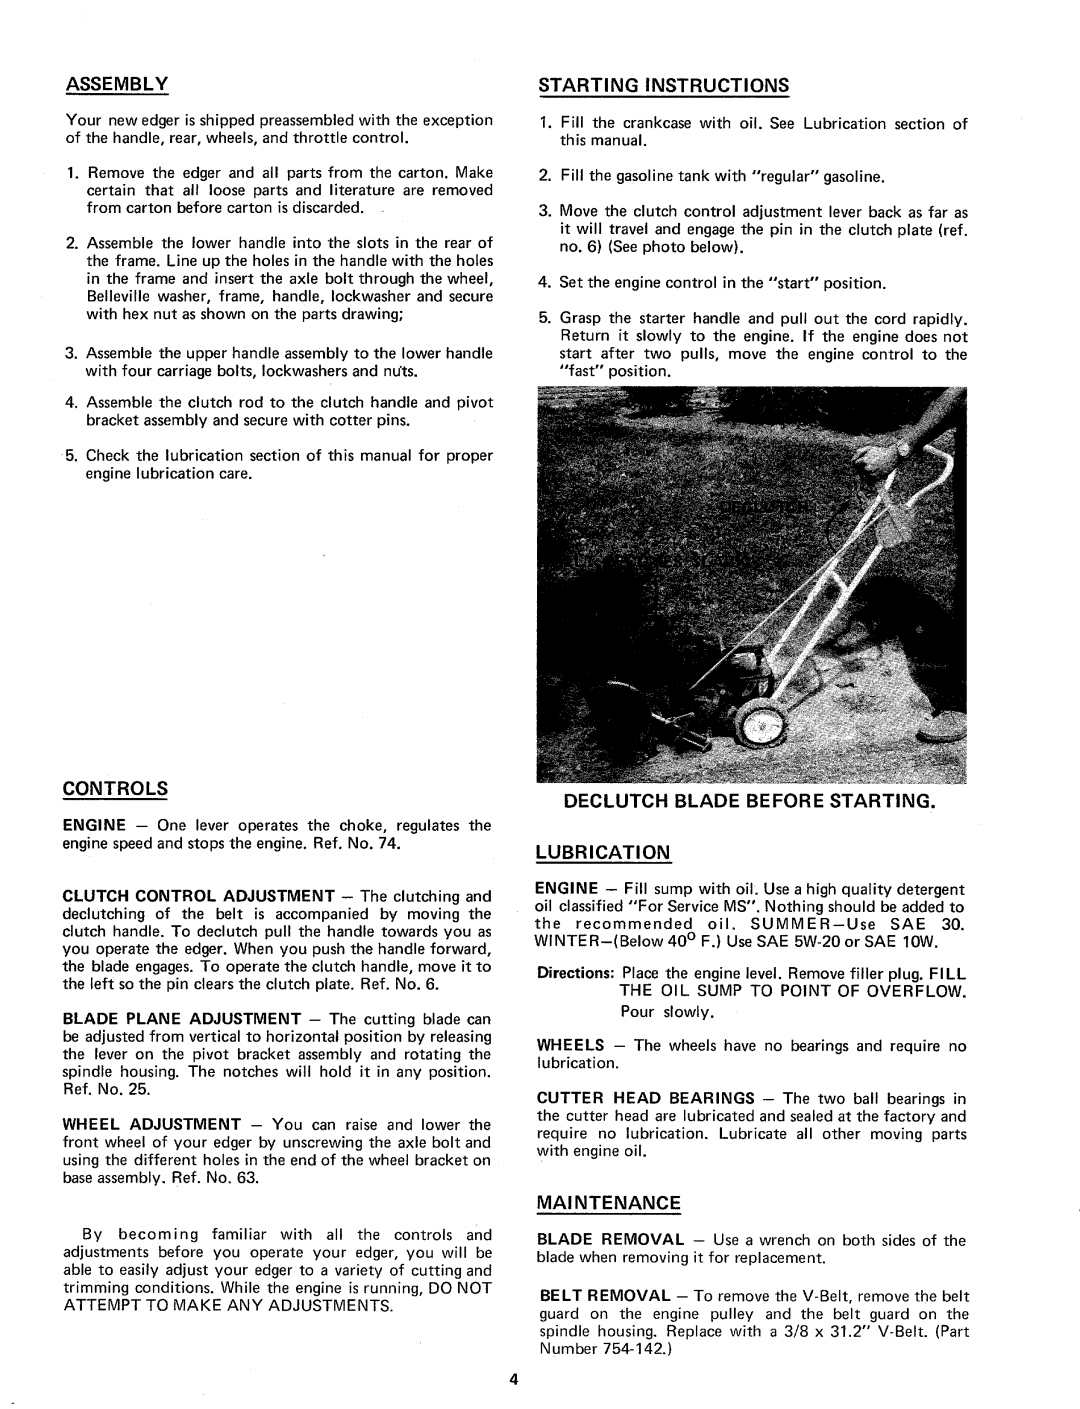 MTD 243-540 manual 